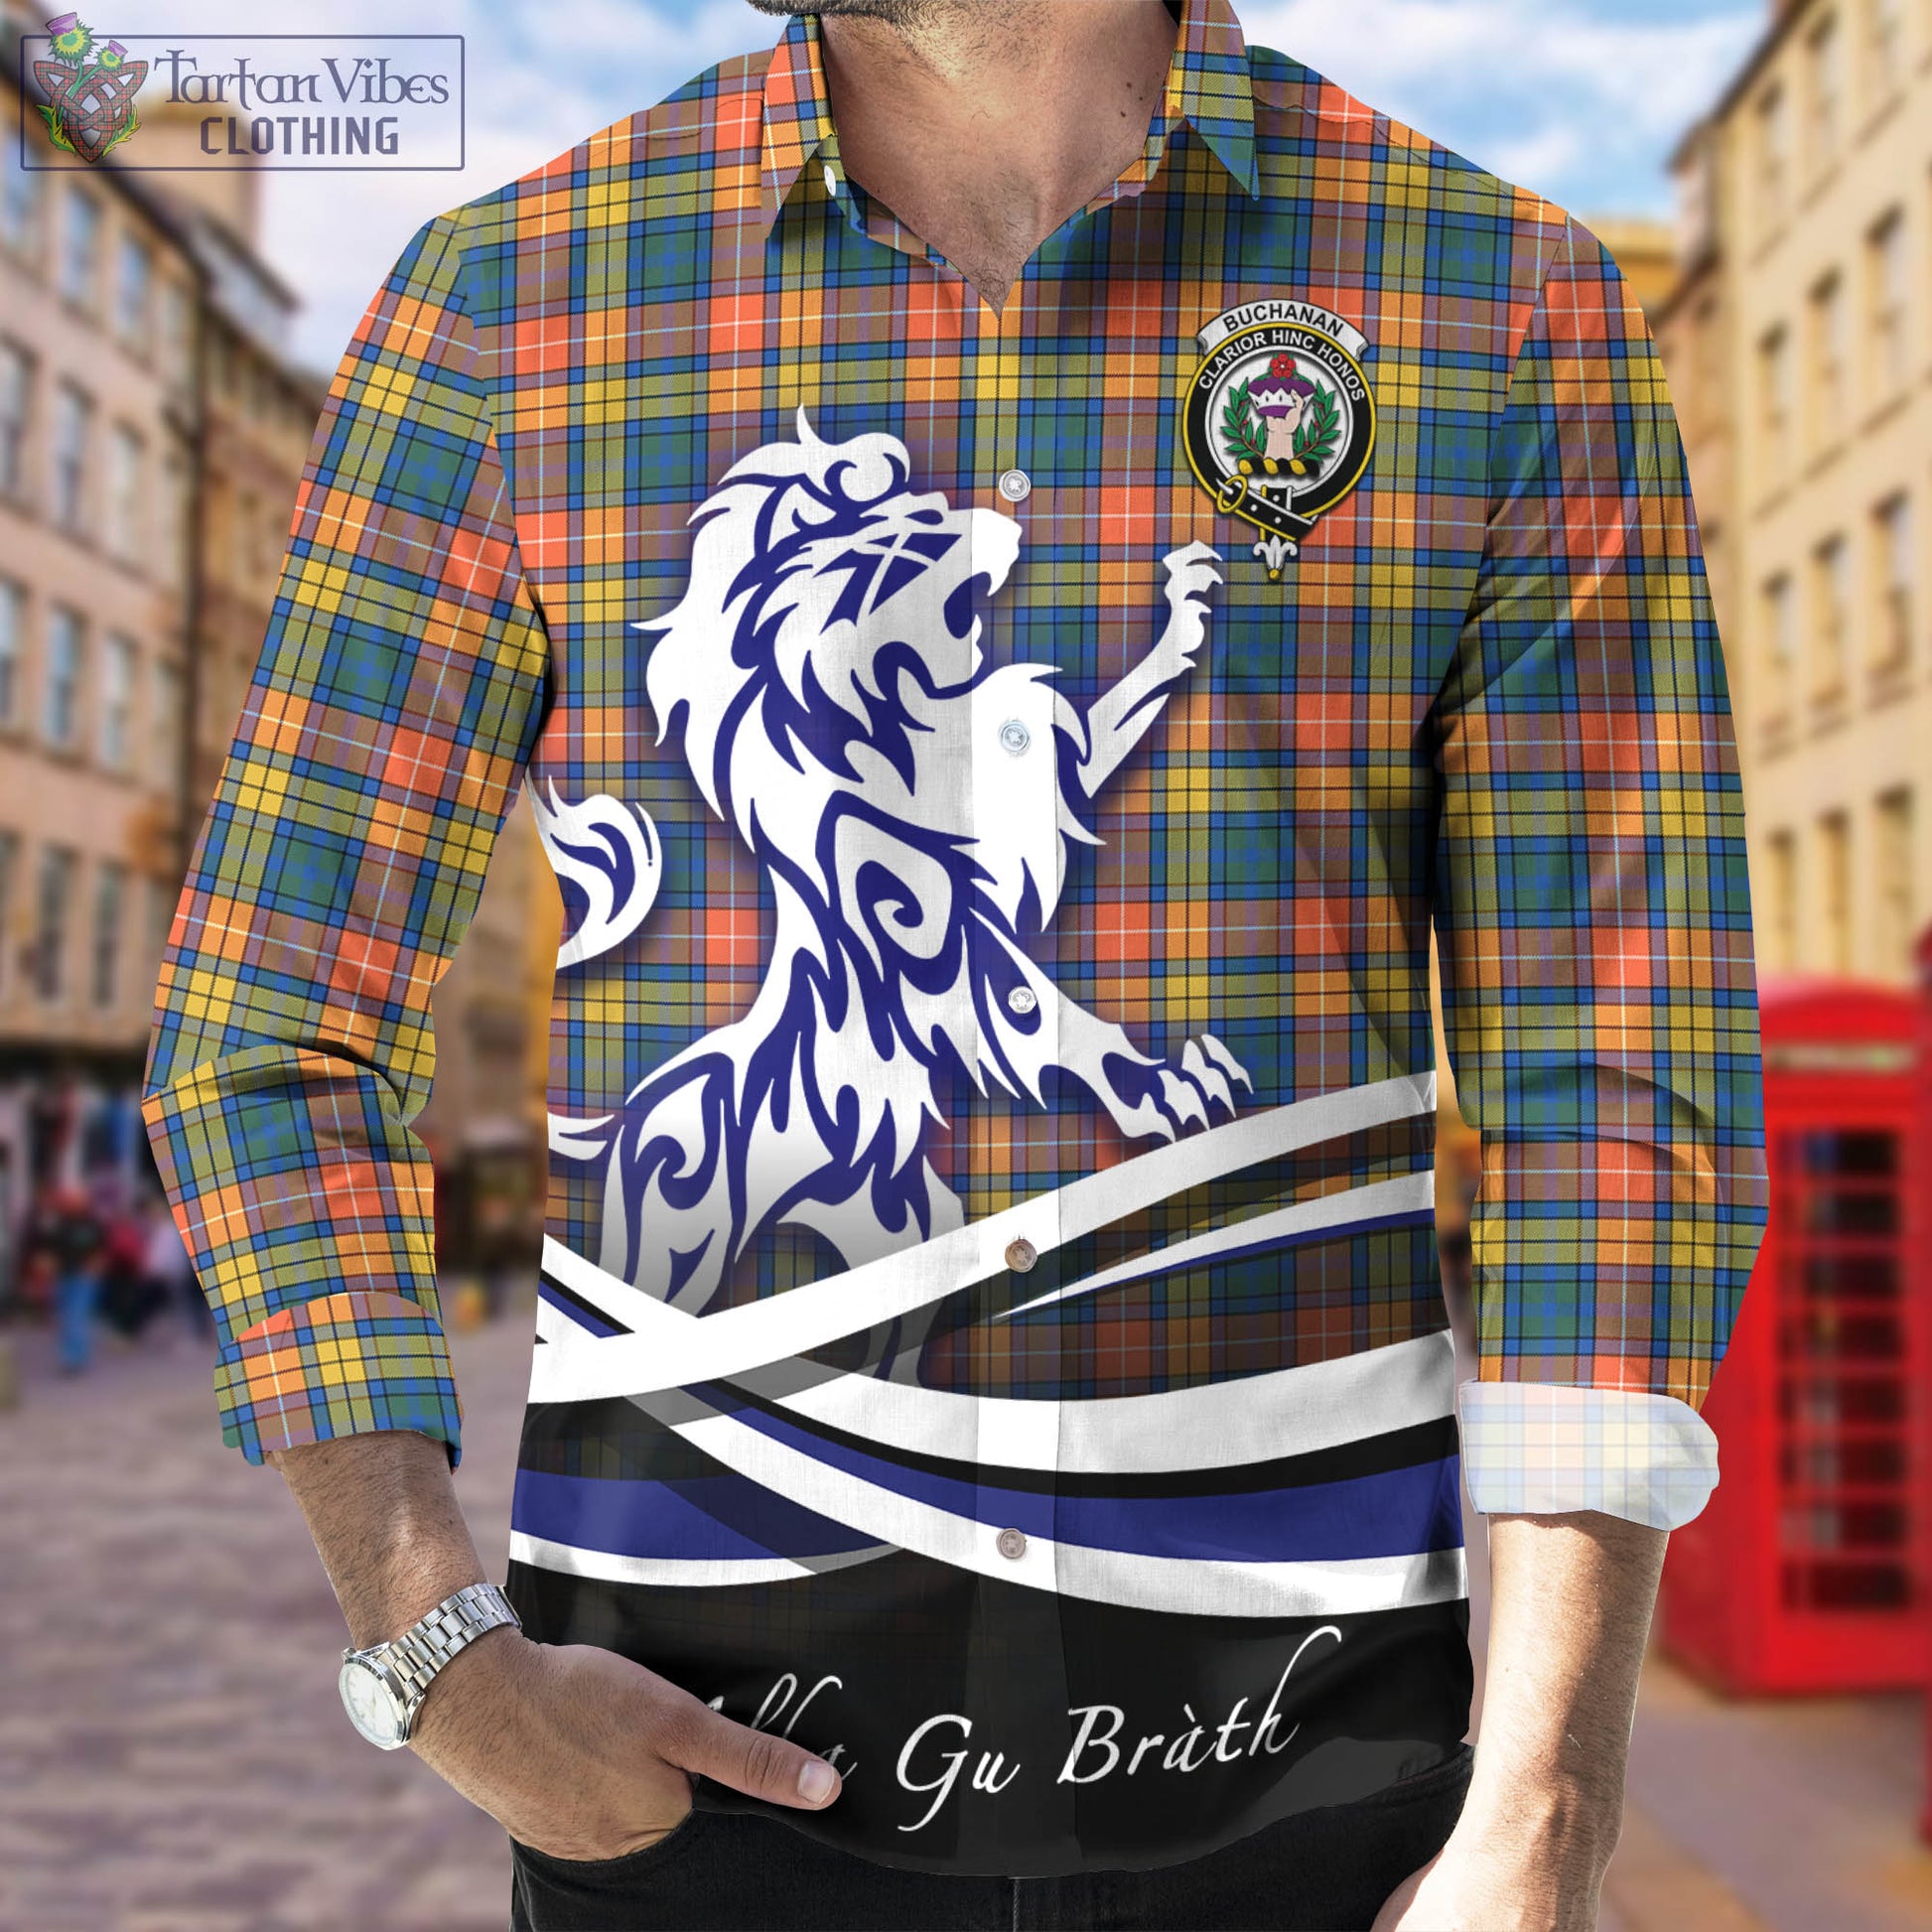 buchanan-ancient-tartan-long-sleeve-button-up-shirt-with-alba-gu-brath-regal-lion-emblem